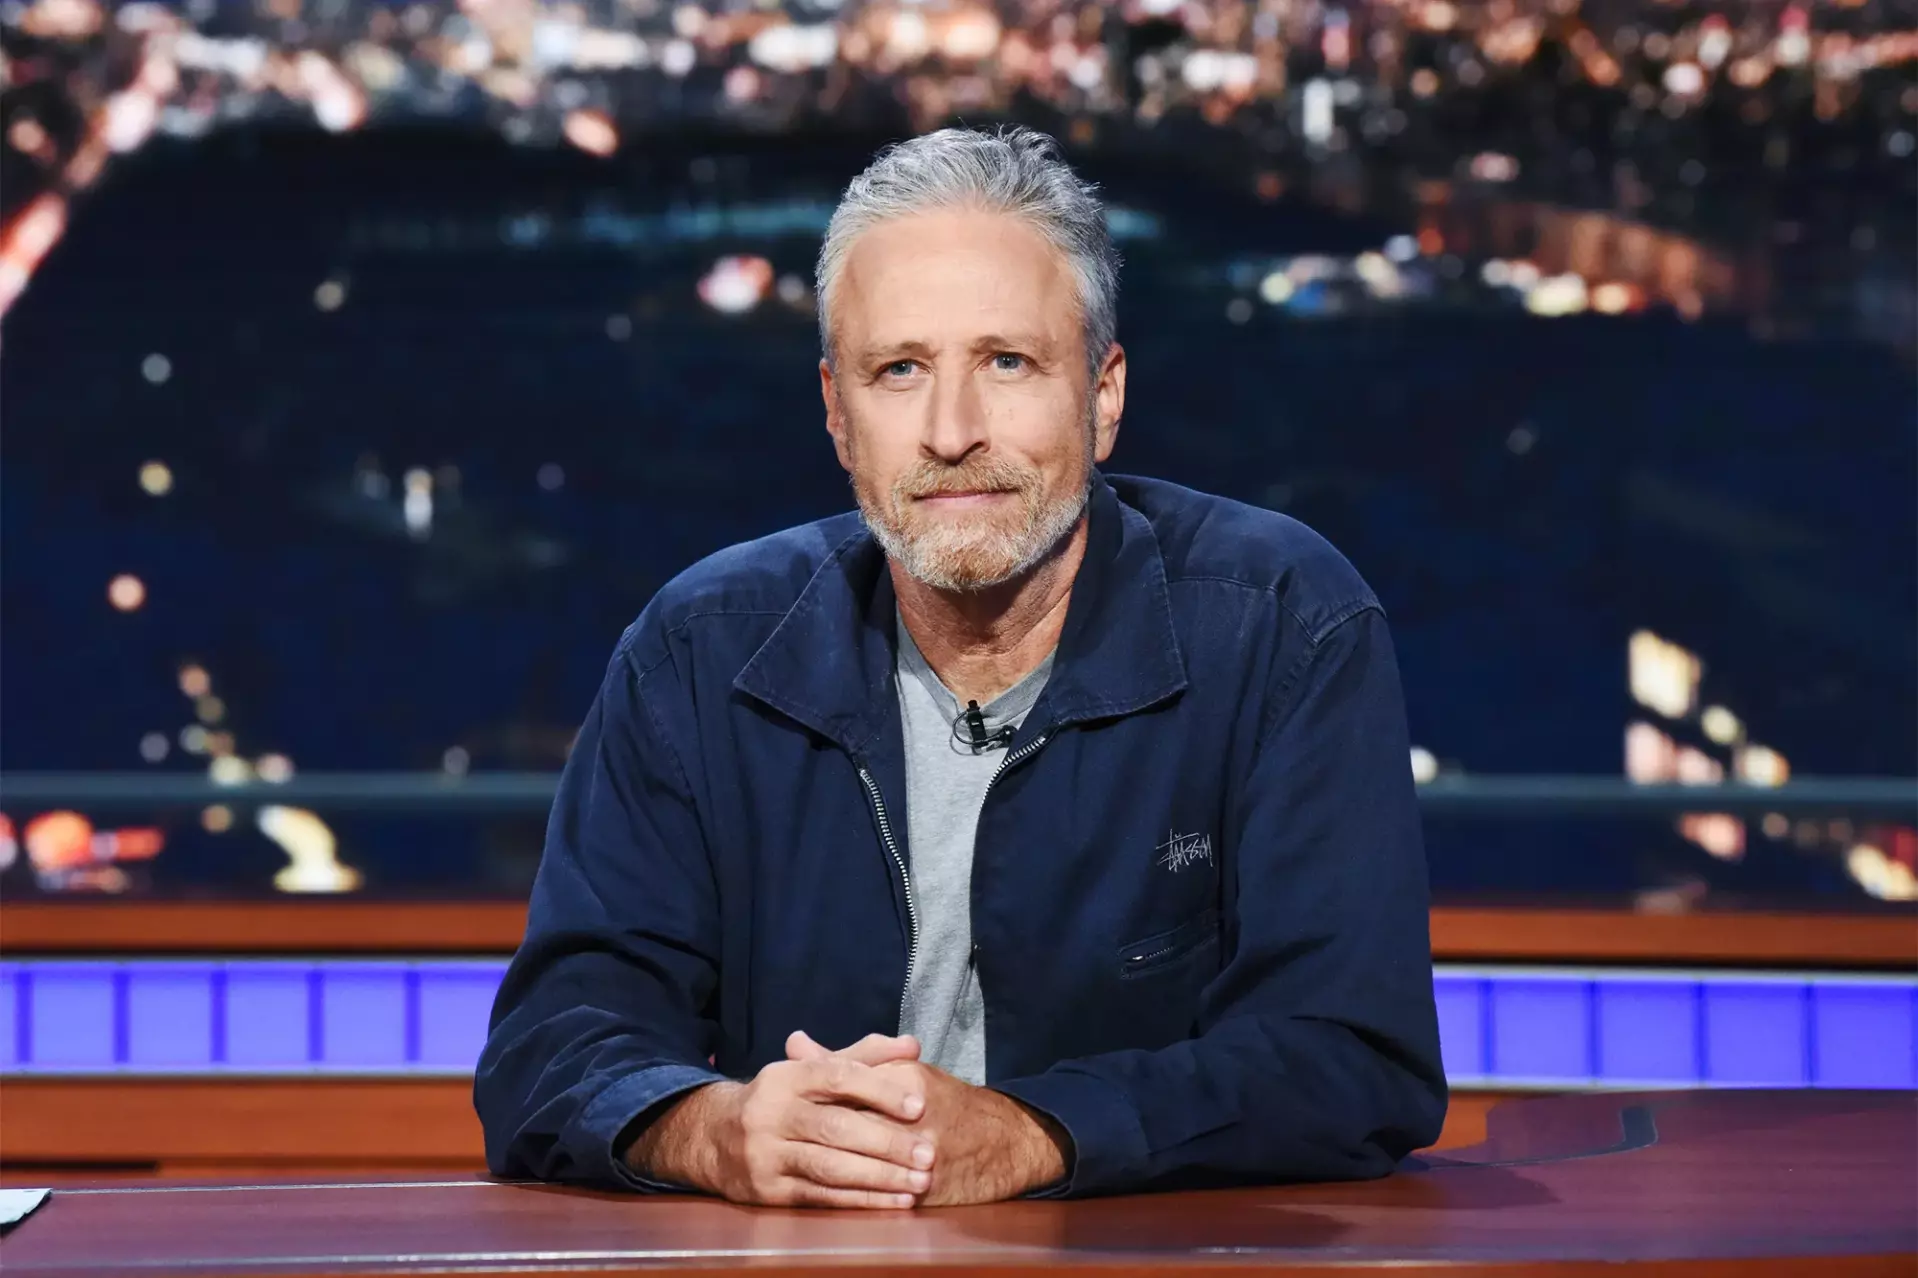 How rich is Jon Stewart?